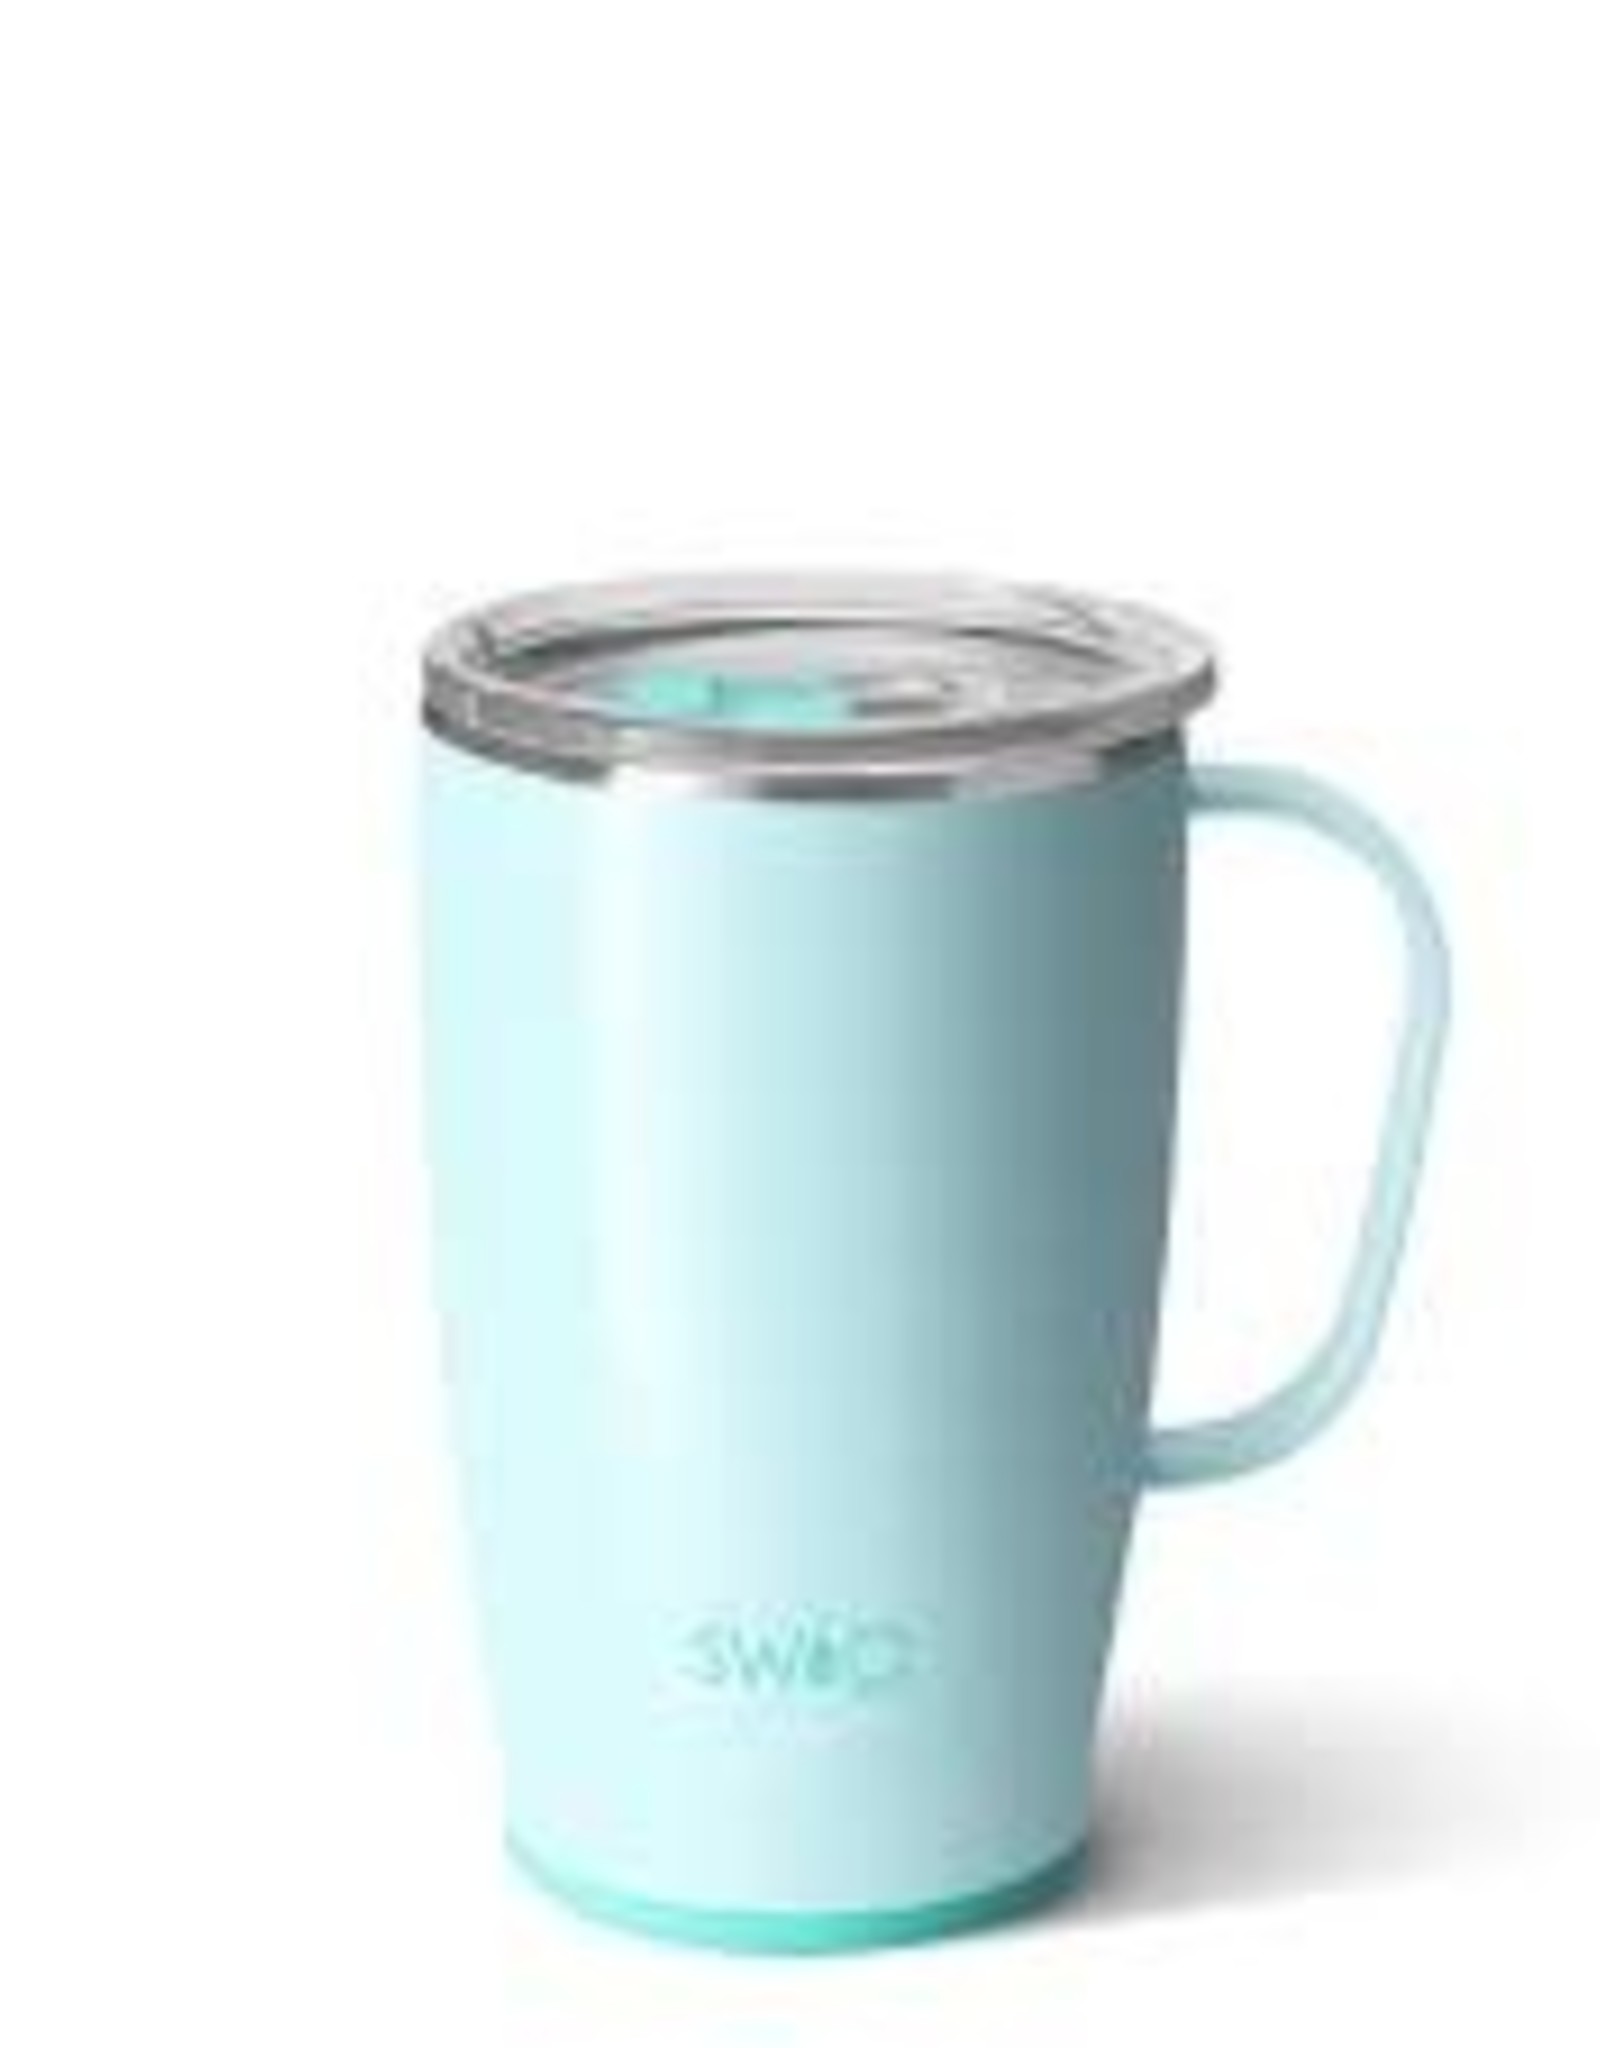 SWIG Stainless steel Mug